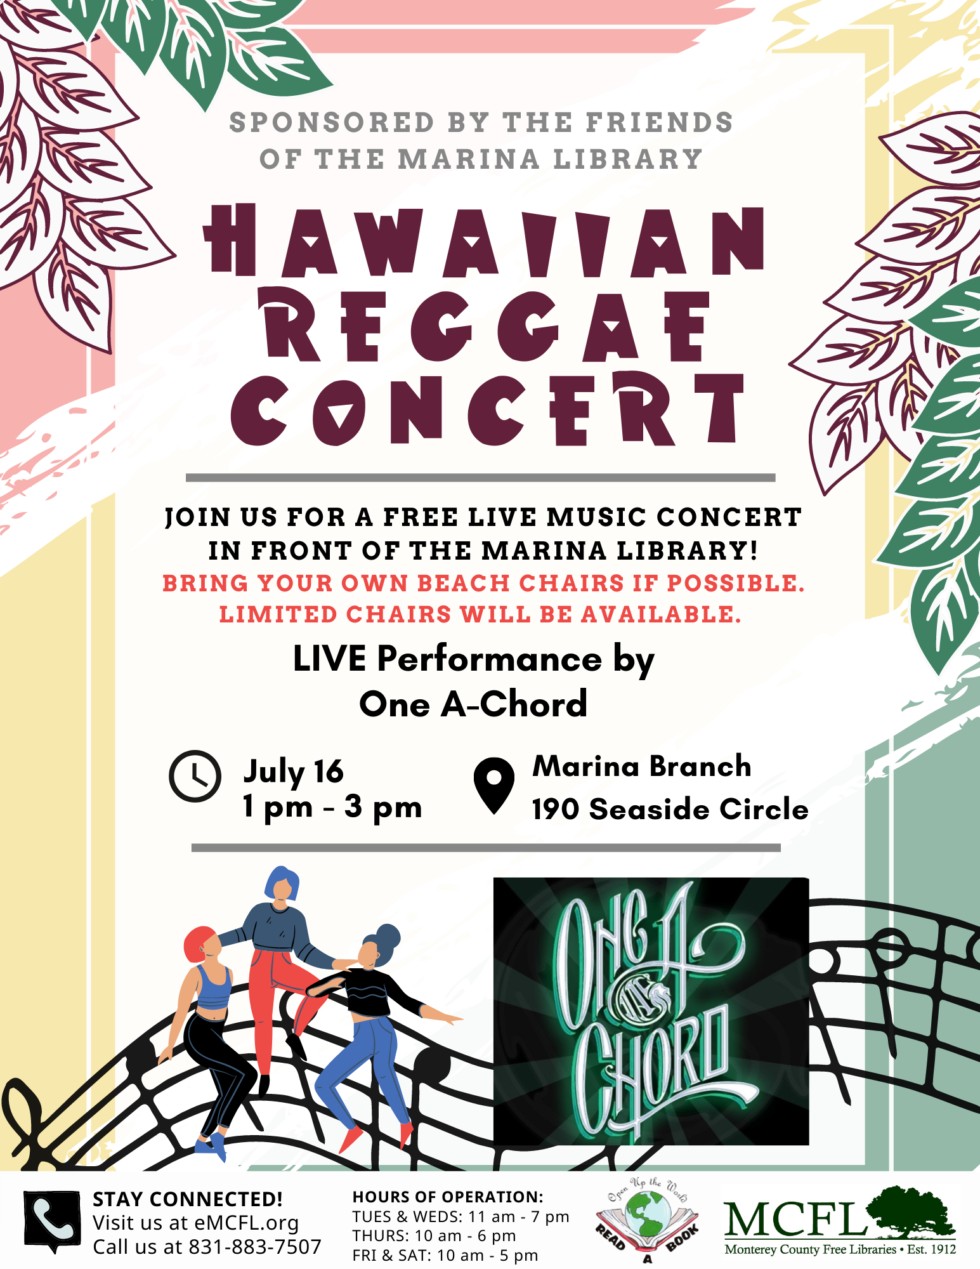 Hawaiian Reggae Concert at Marina Library! Marina Chamber of Commerce